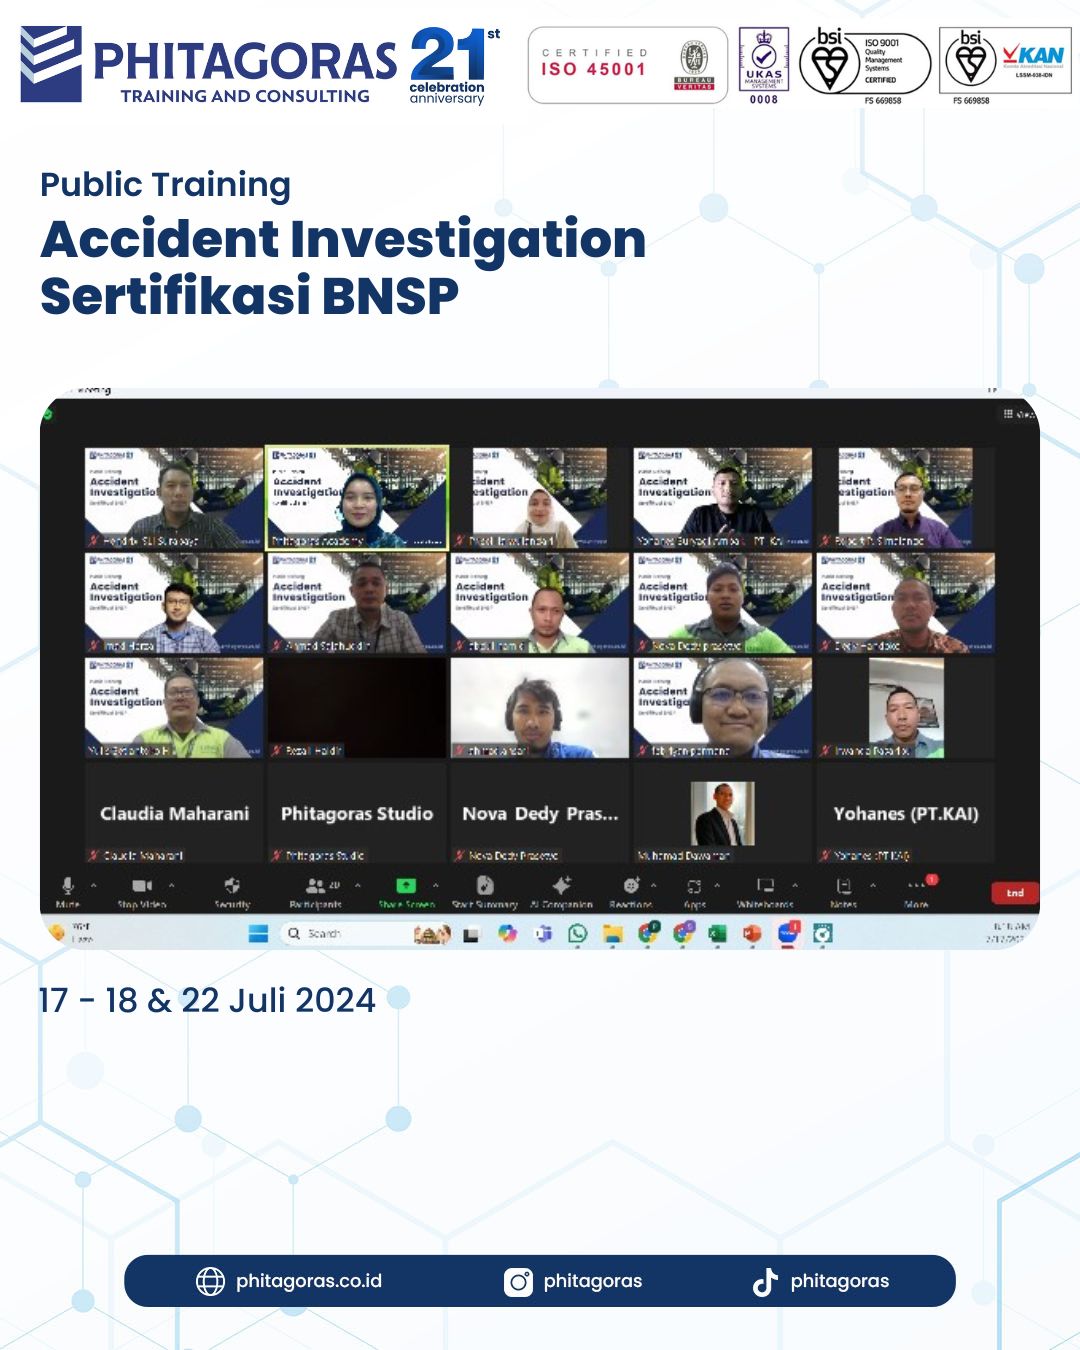 Public Training Accident Investigation Sertifikasi BNSP Tanggal 17 - 18 & 22 Juli 2024